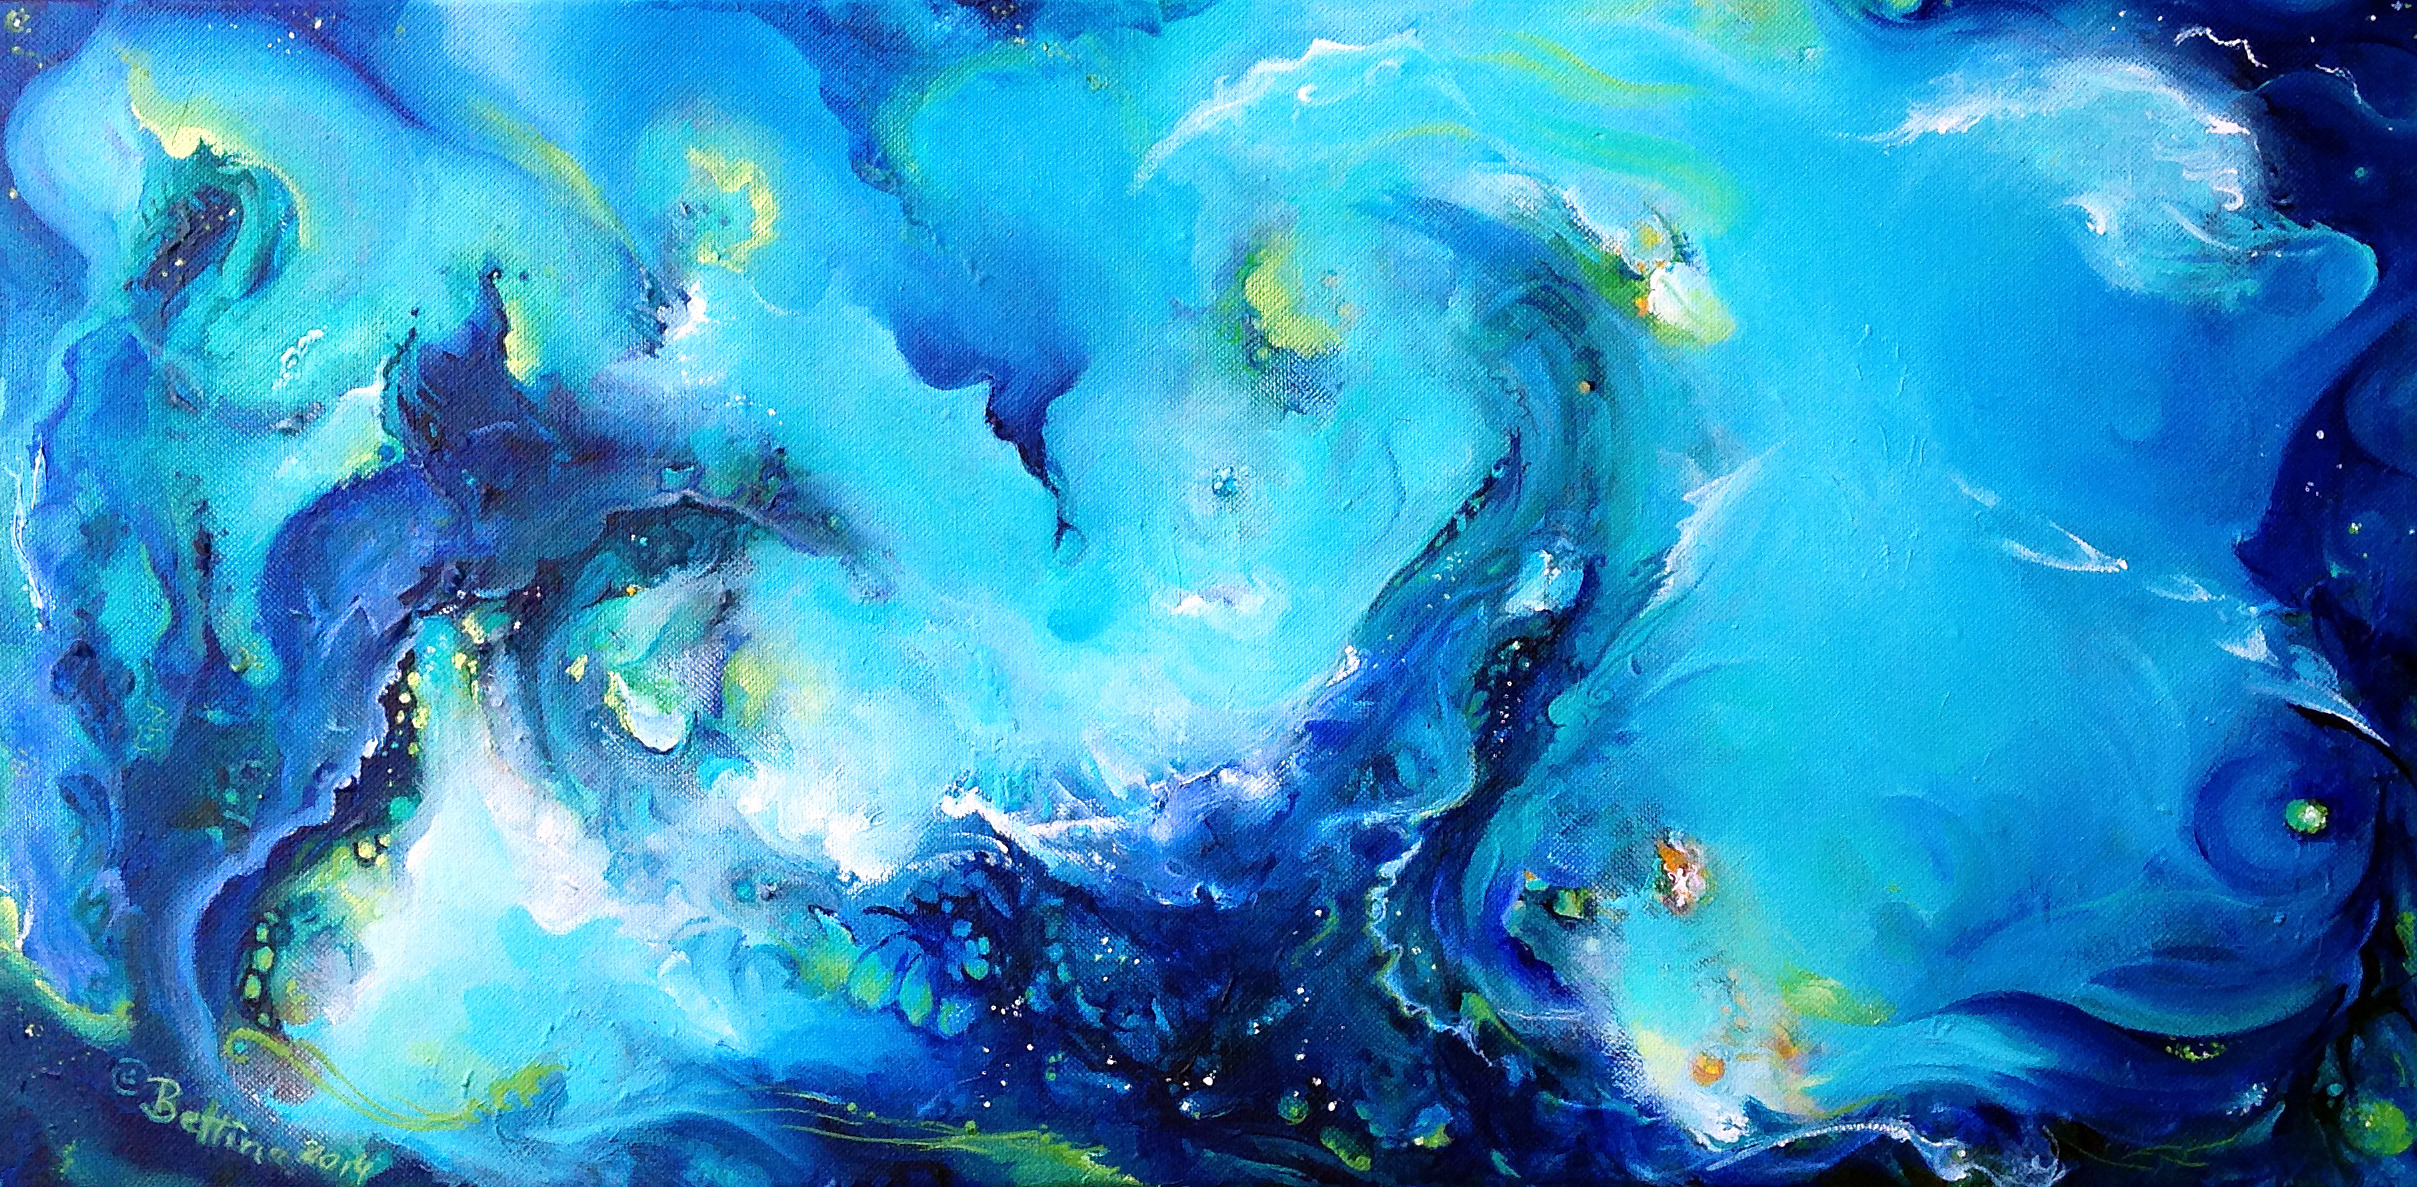 Blue lagoon by bettina madini acrylic on canvas 24x12 ox8exa